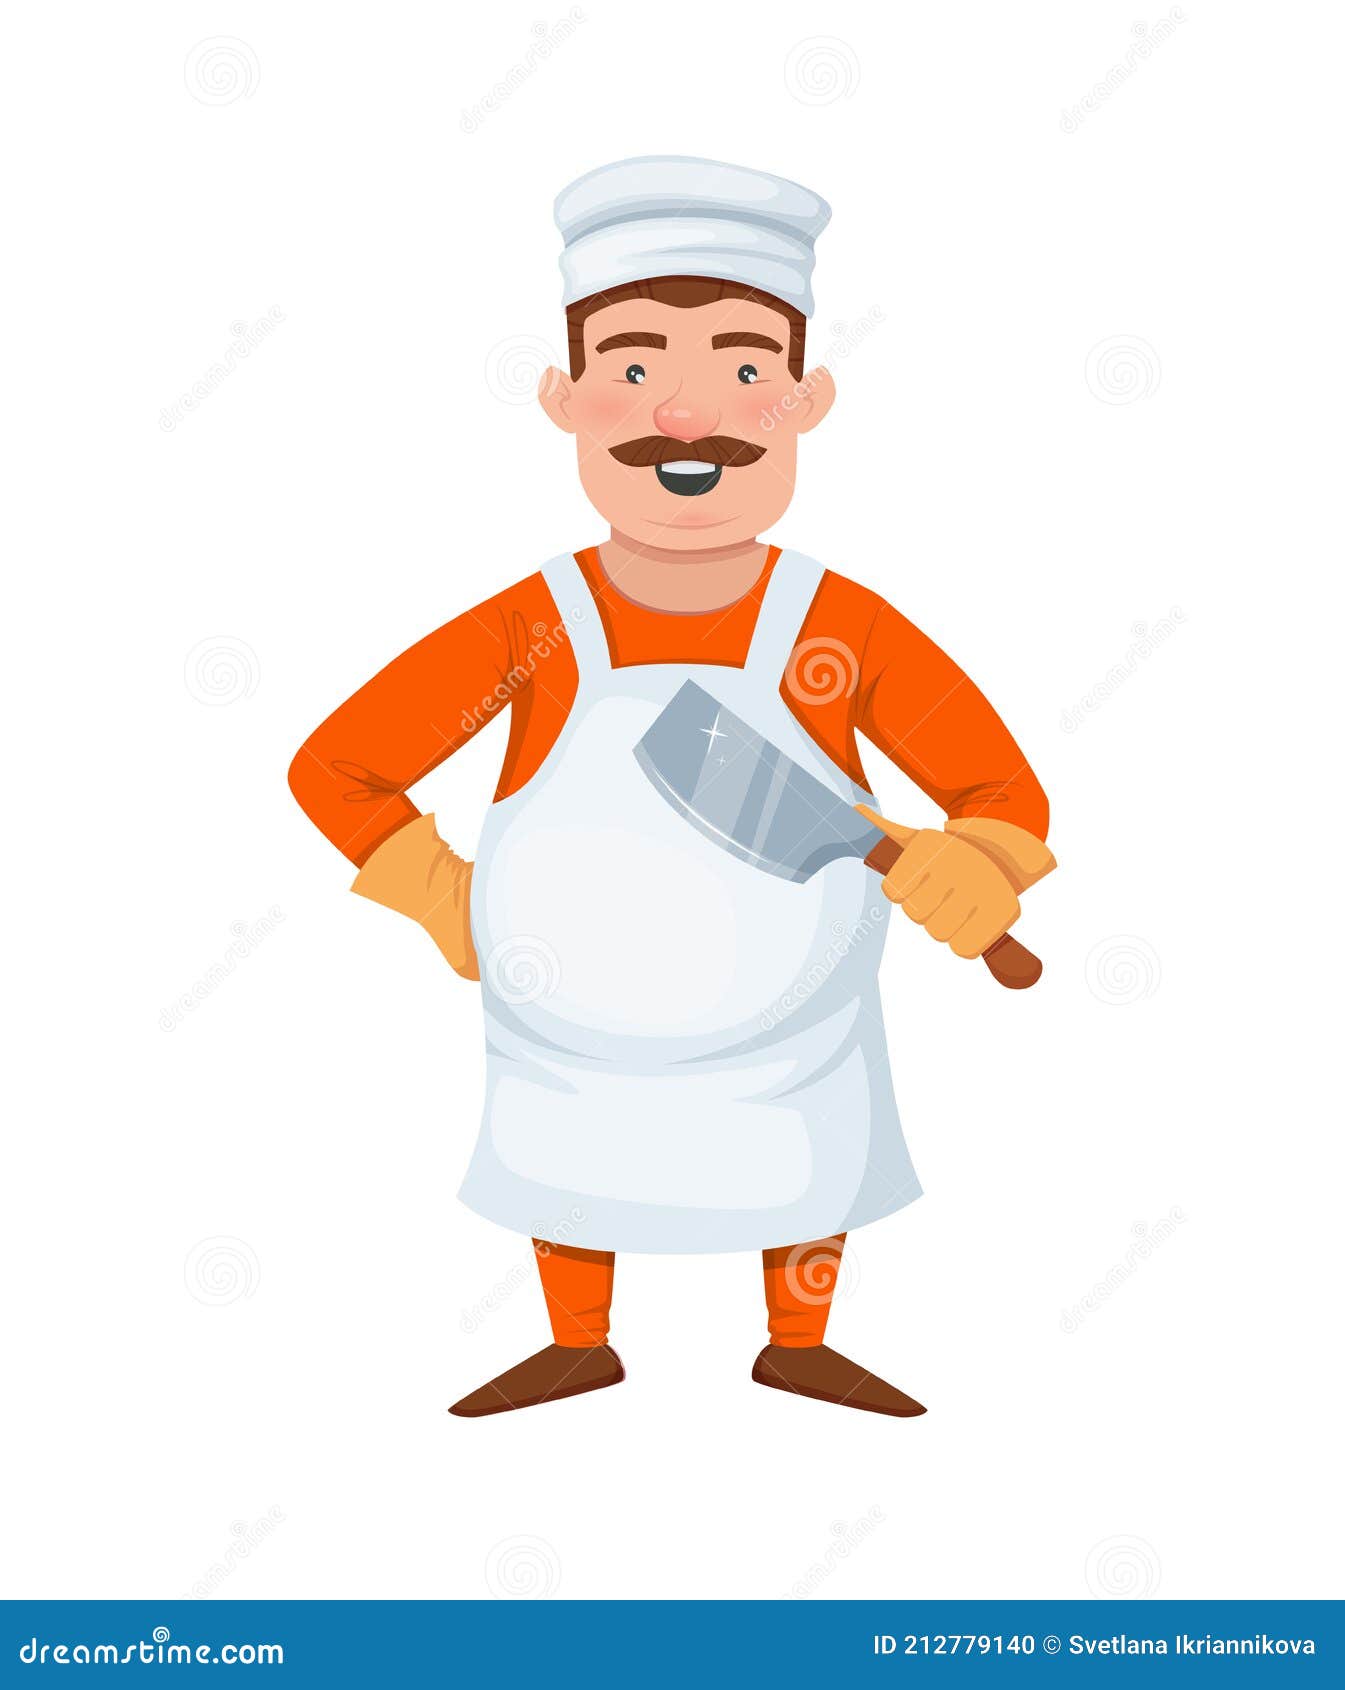 Una caricatura de hombre con un gorro de cocinero y delantal